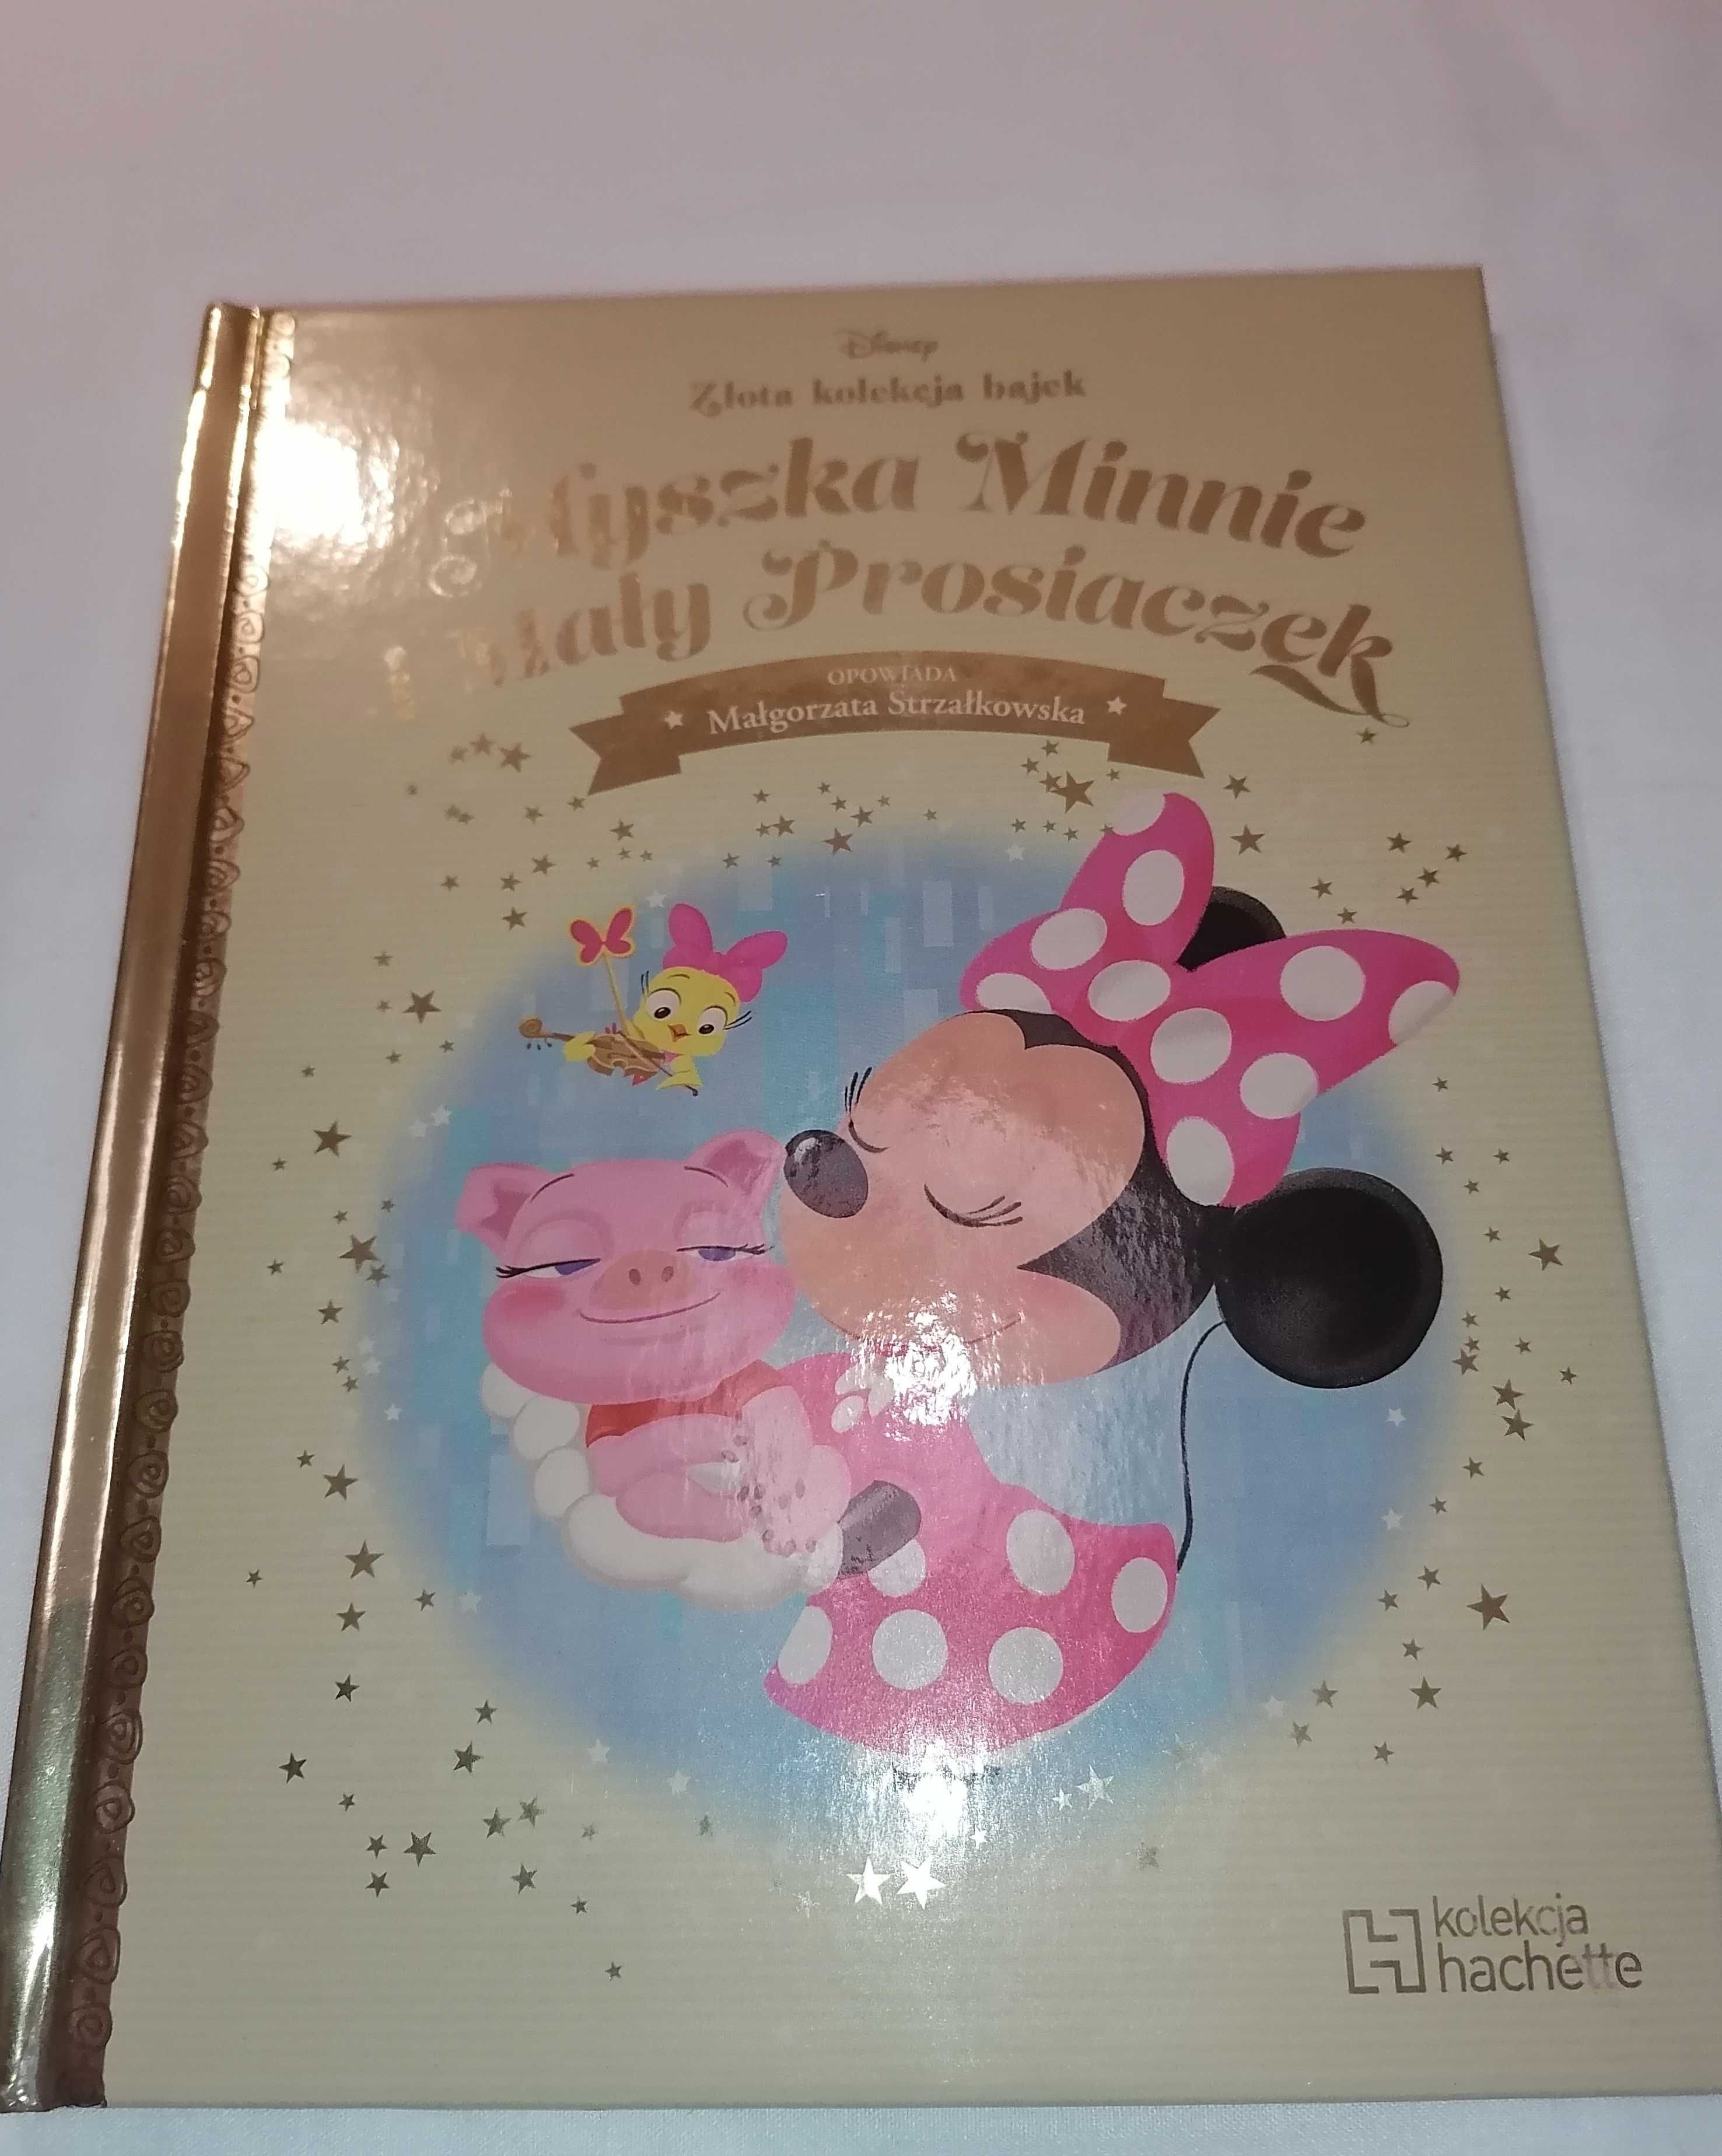 Myszka Minnie i mały prosiaczek (tom 26) – złota kolekcja bajek